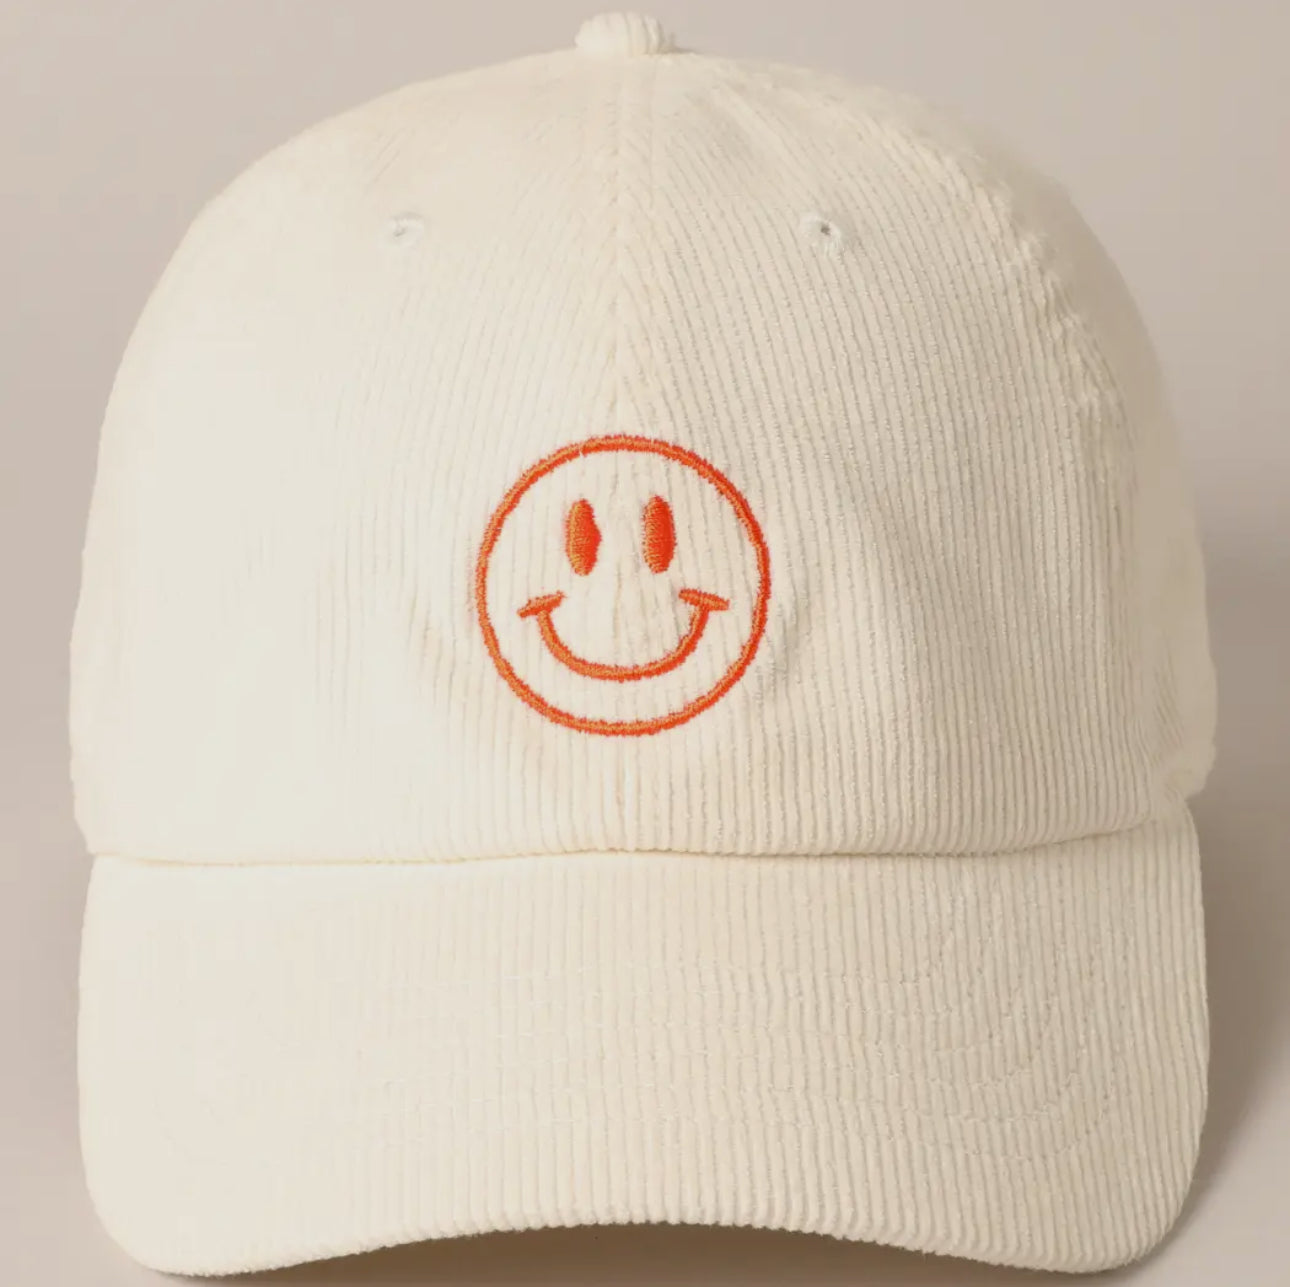 Baseball cap, smiley face